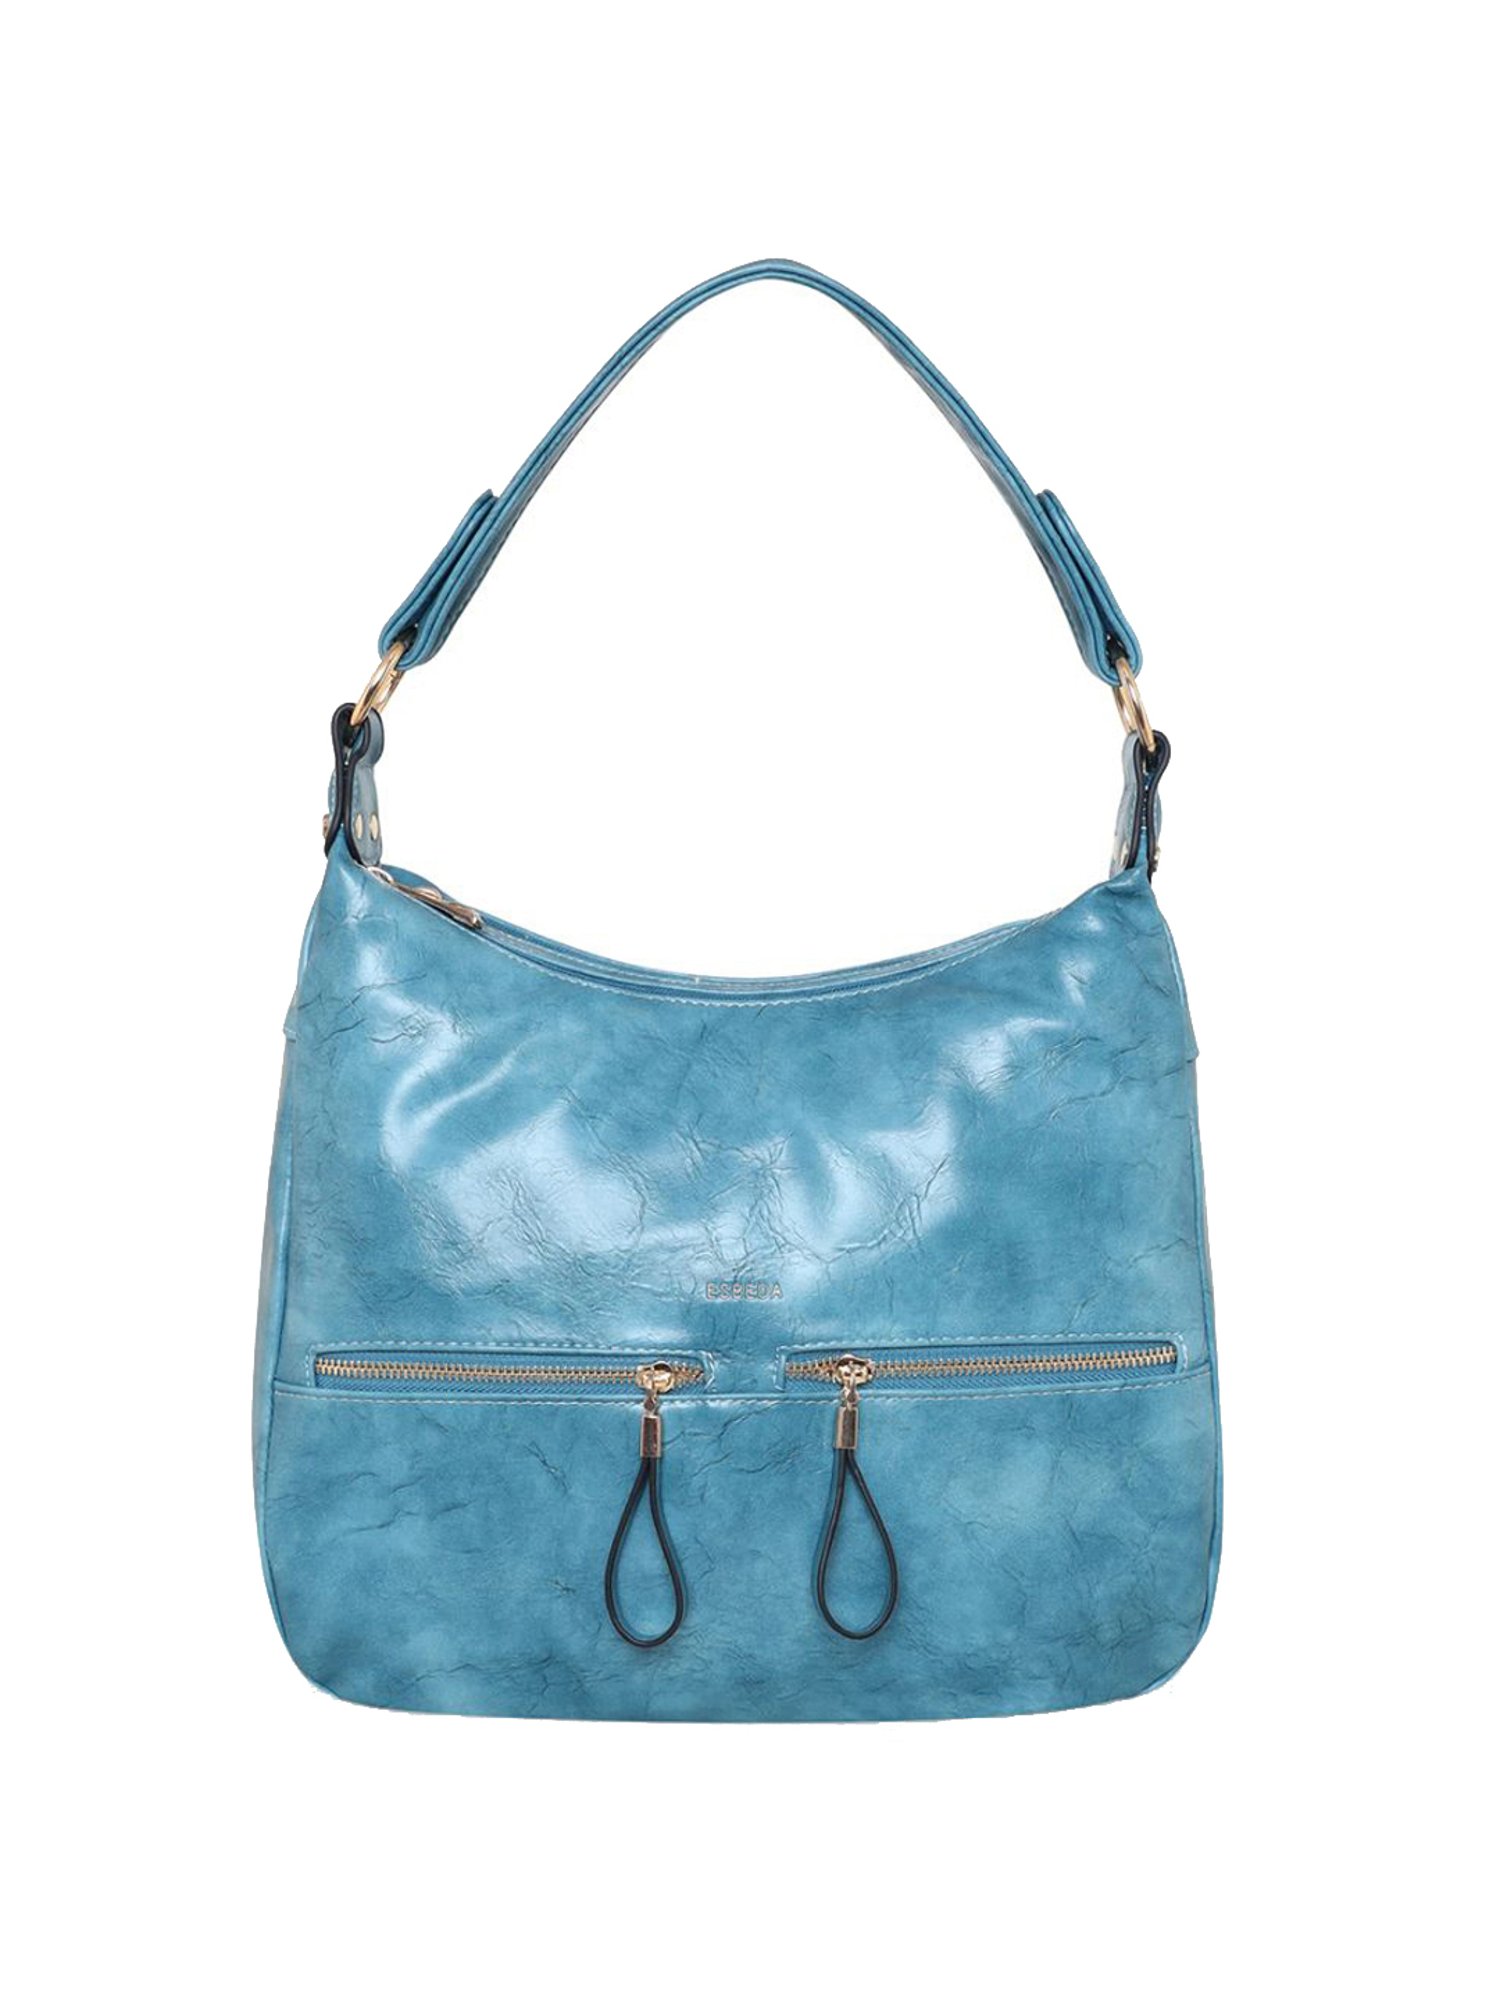 Stylish Blue Tassel Hobo Bag by Rebecca Minkoff